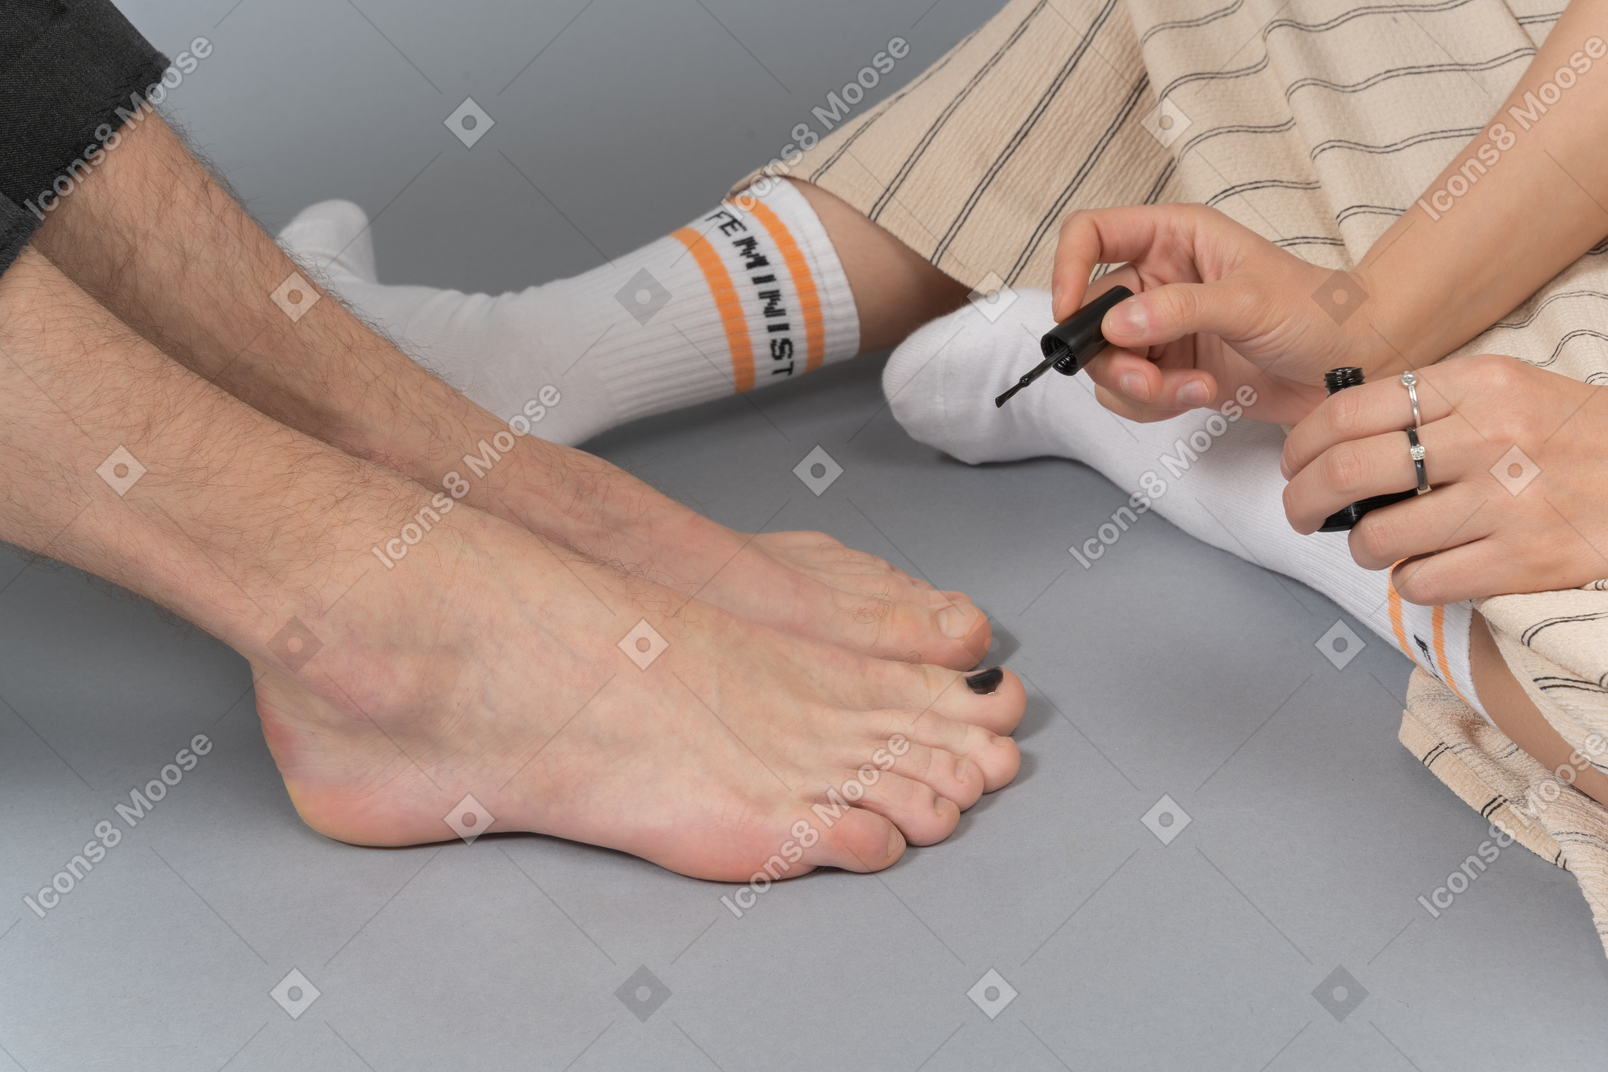 Le unghie dei piedi di una donna che lucidano